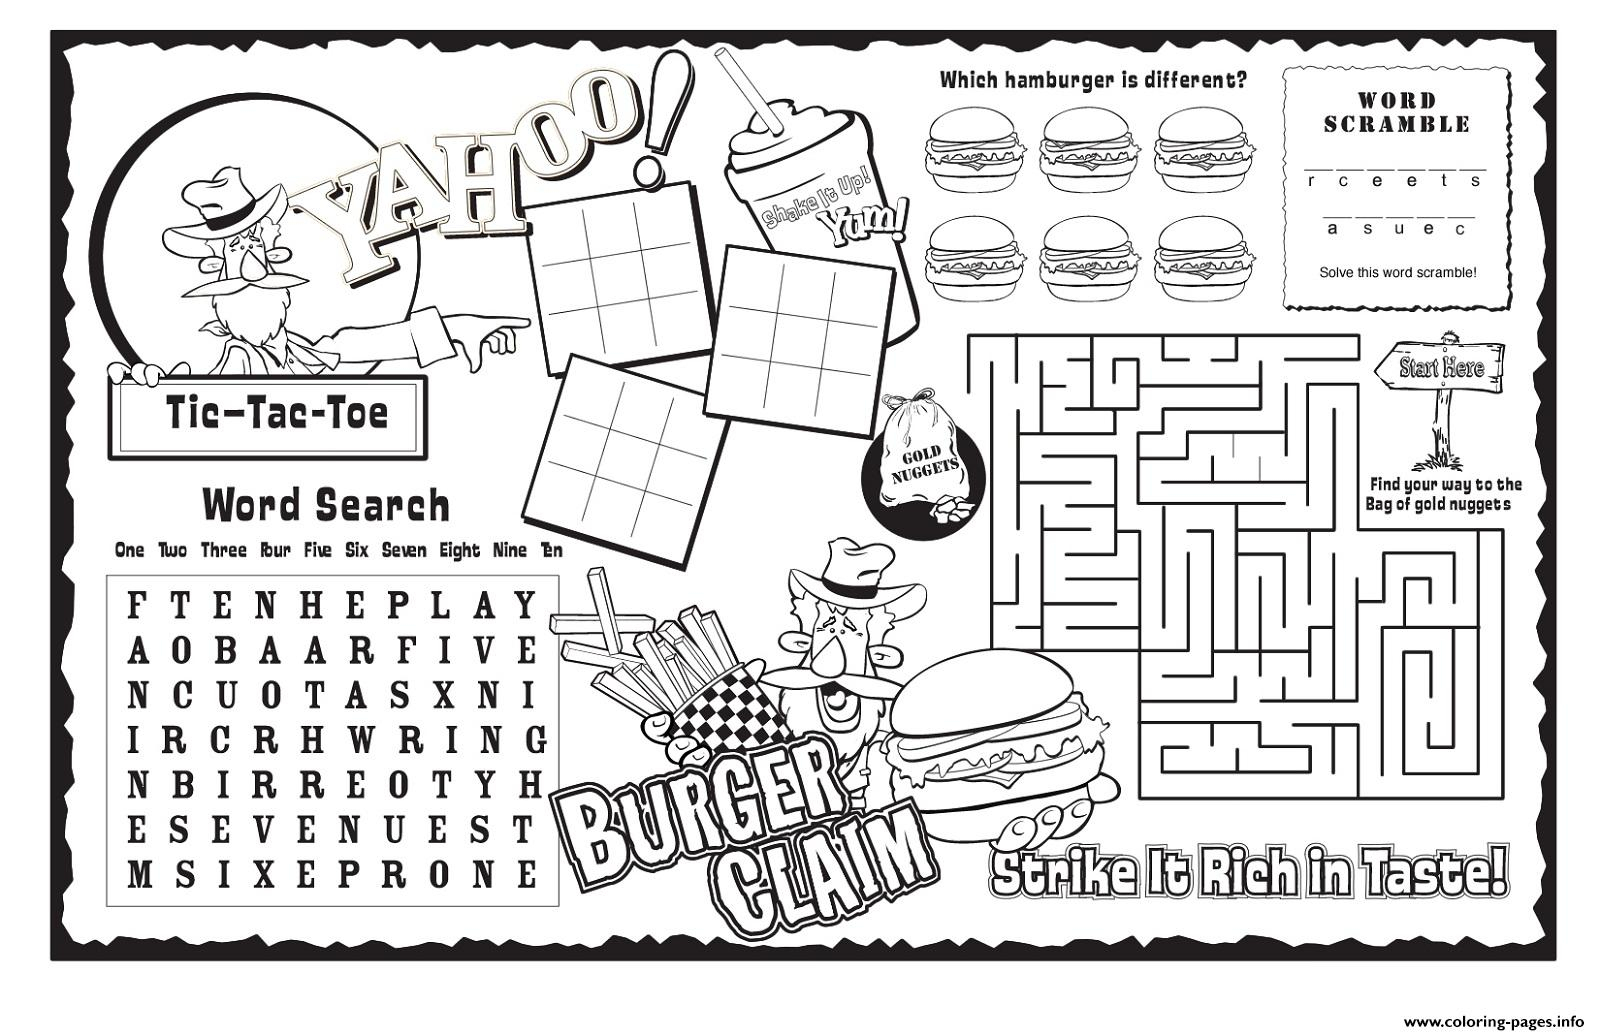 Burger Claim Kids Activity Sheet Free Coloring Pages Printable - Free Printable Activity Sheets For Kids